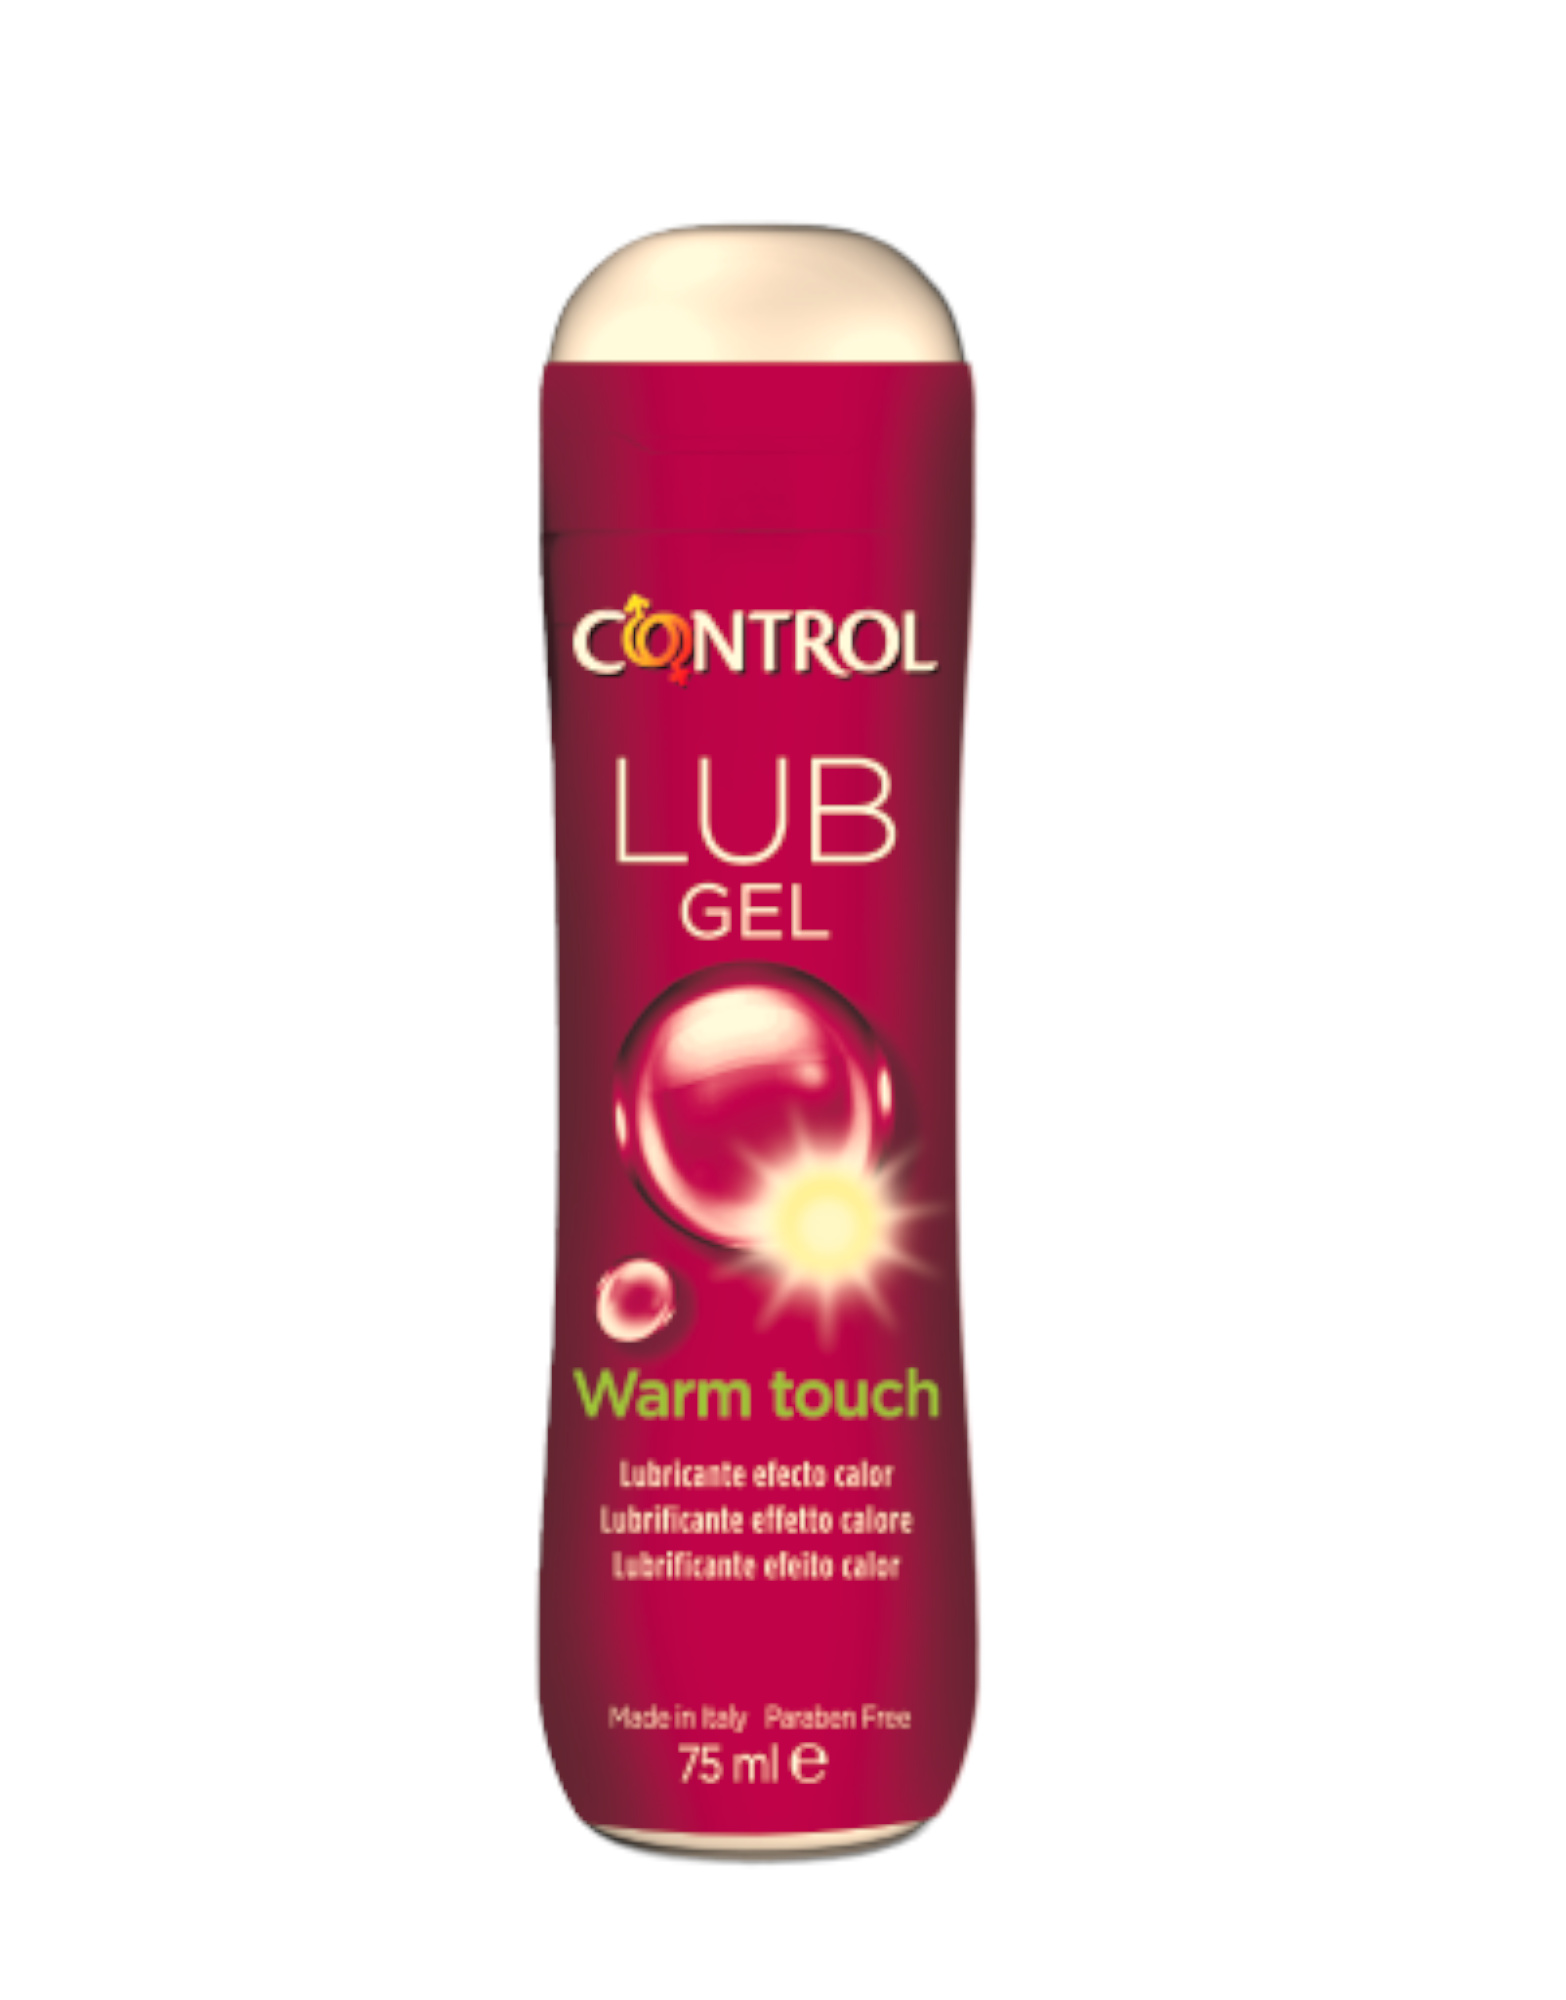 Control gel. Control lub Gel nature состав. 10092812 Warm Touch. Lub. Warm Touch перевод.